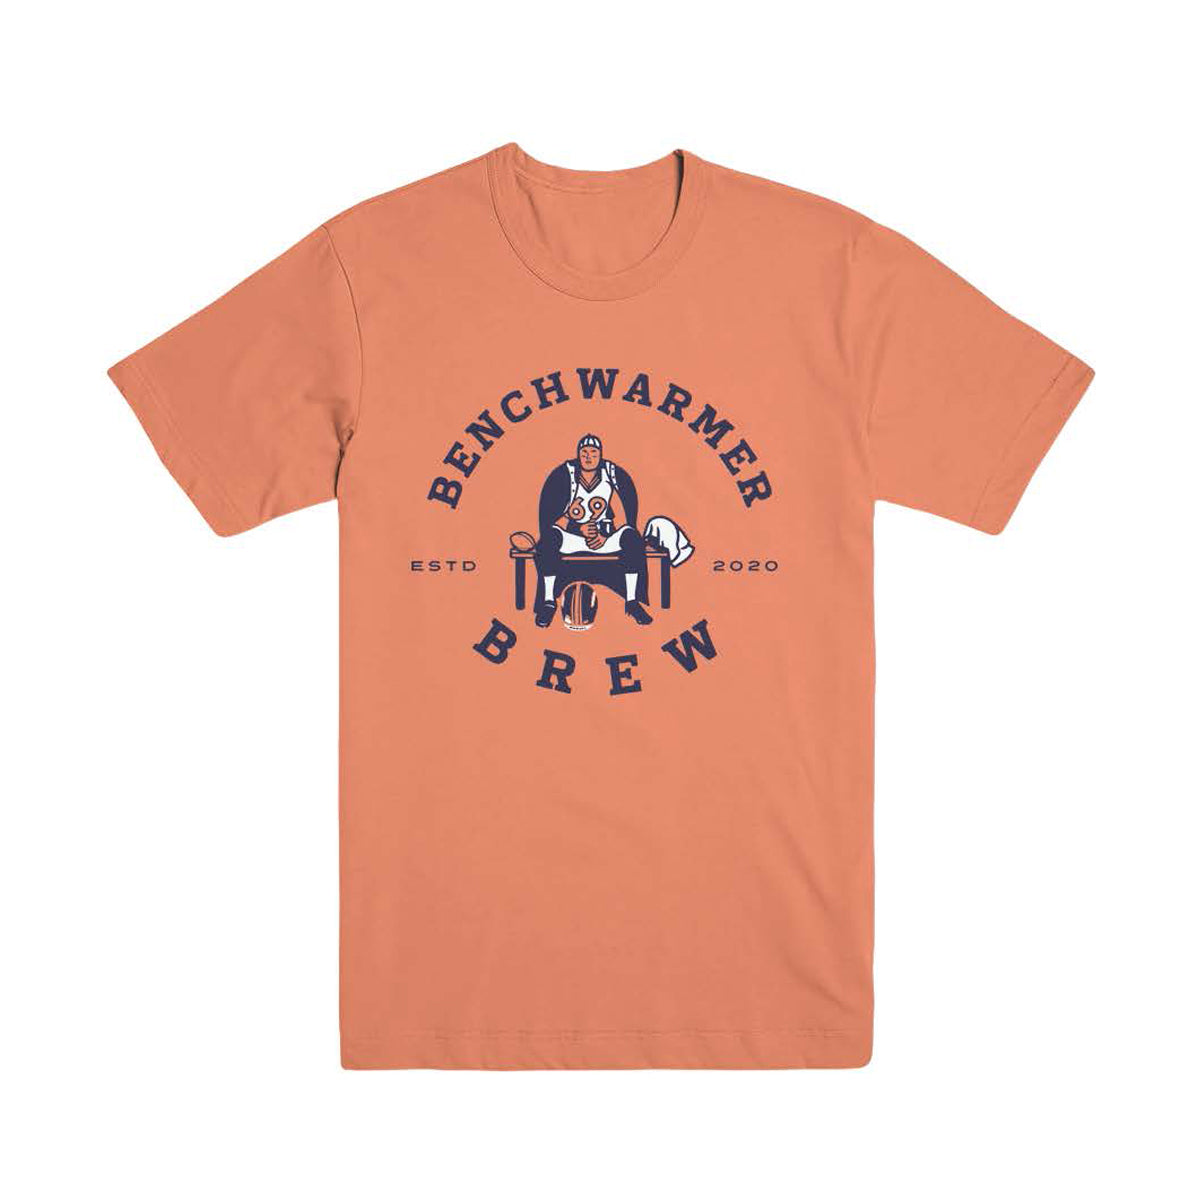 Benchwarmer Brew T-Shirt